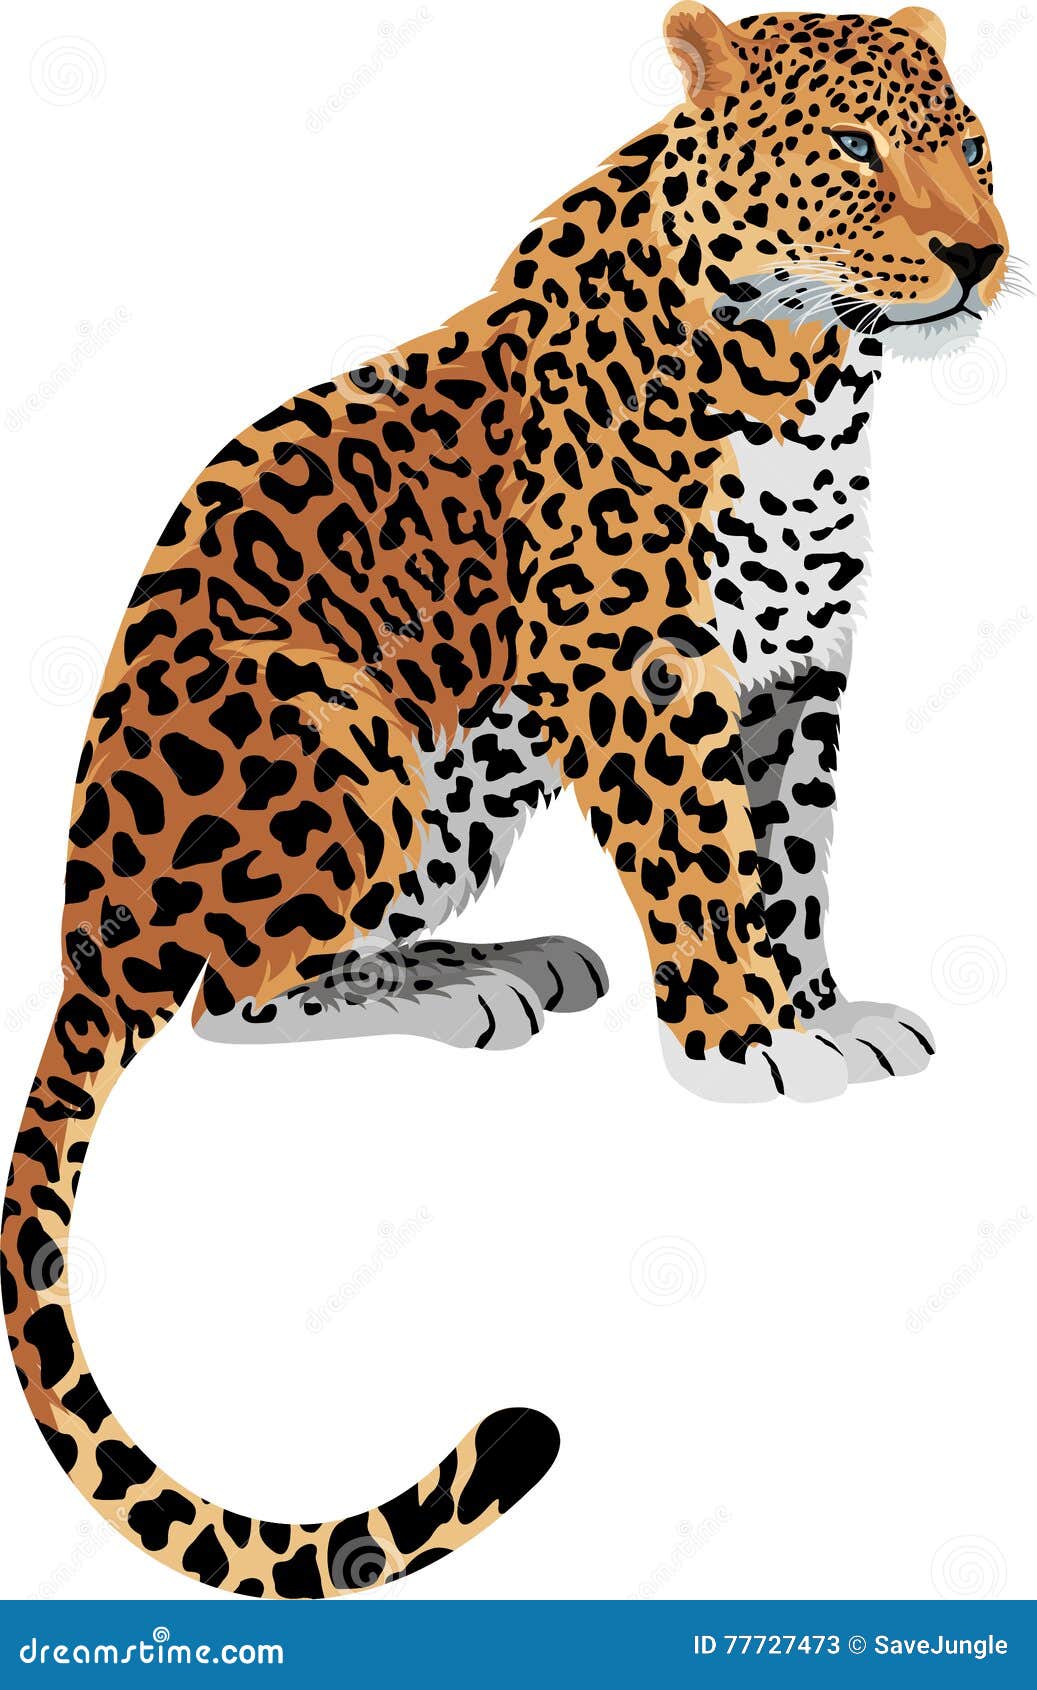  leopard panthera pardus